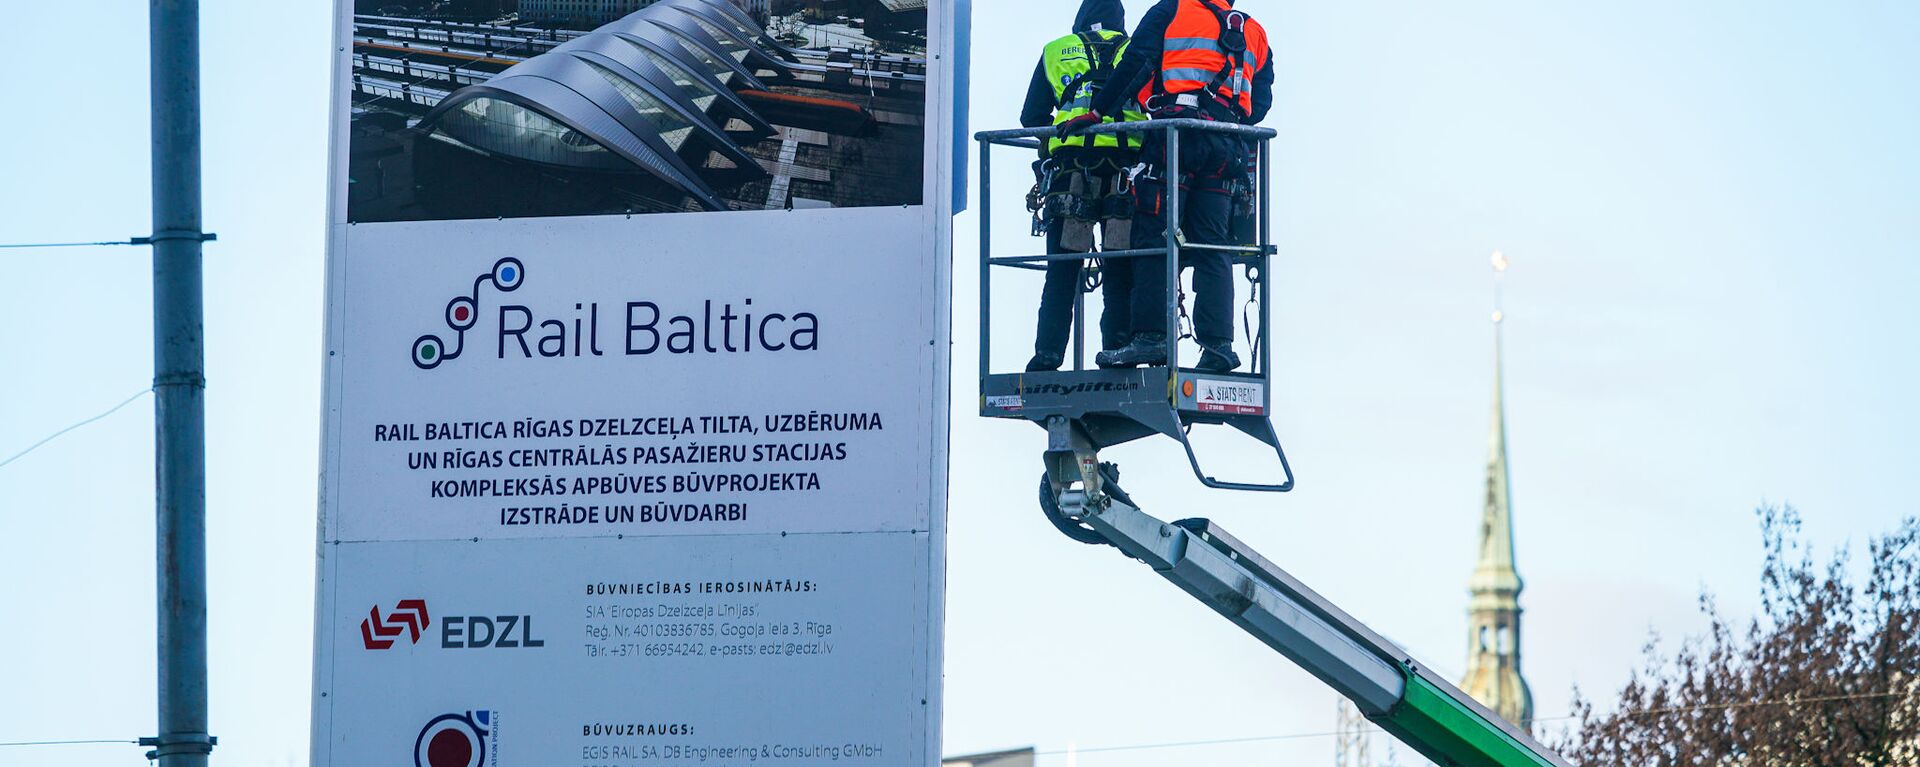 Официальное открытие строительных работ Центрального узла Rail Baltica в Риге - Sputnik Латвия, 1920, 04.03.2021